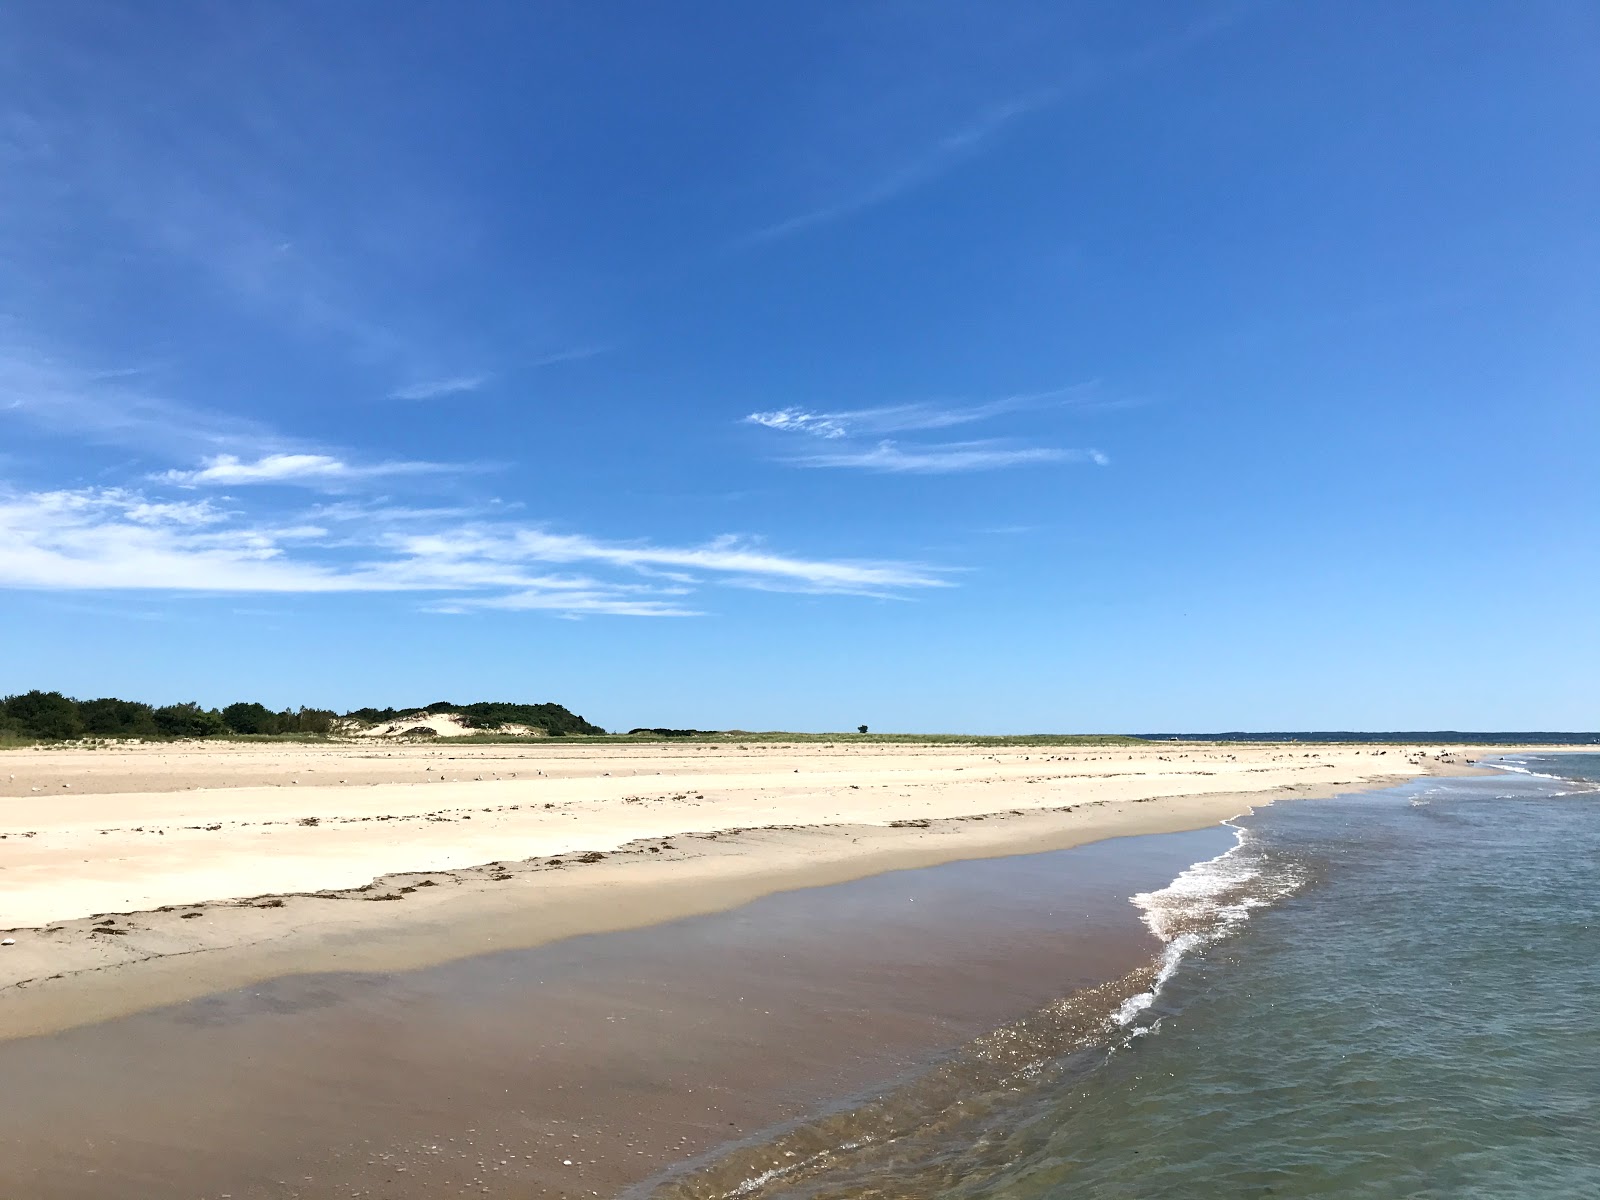 Zdjęcie Sandy Point beach z powierzchnią jasny piasek